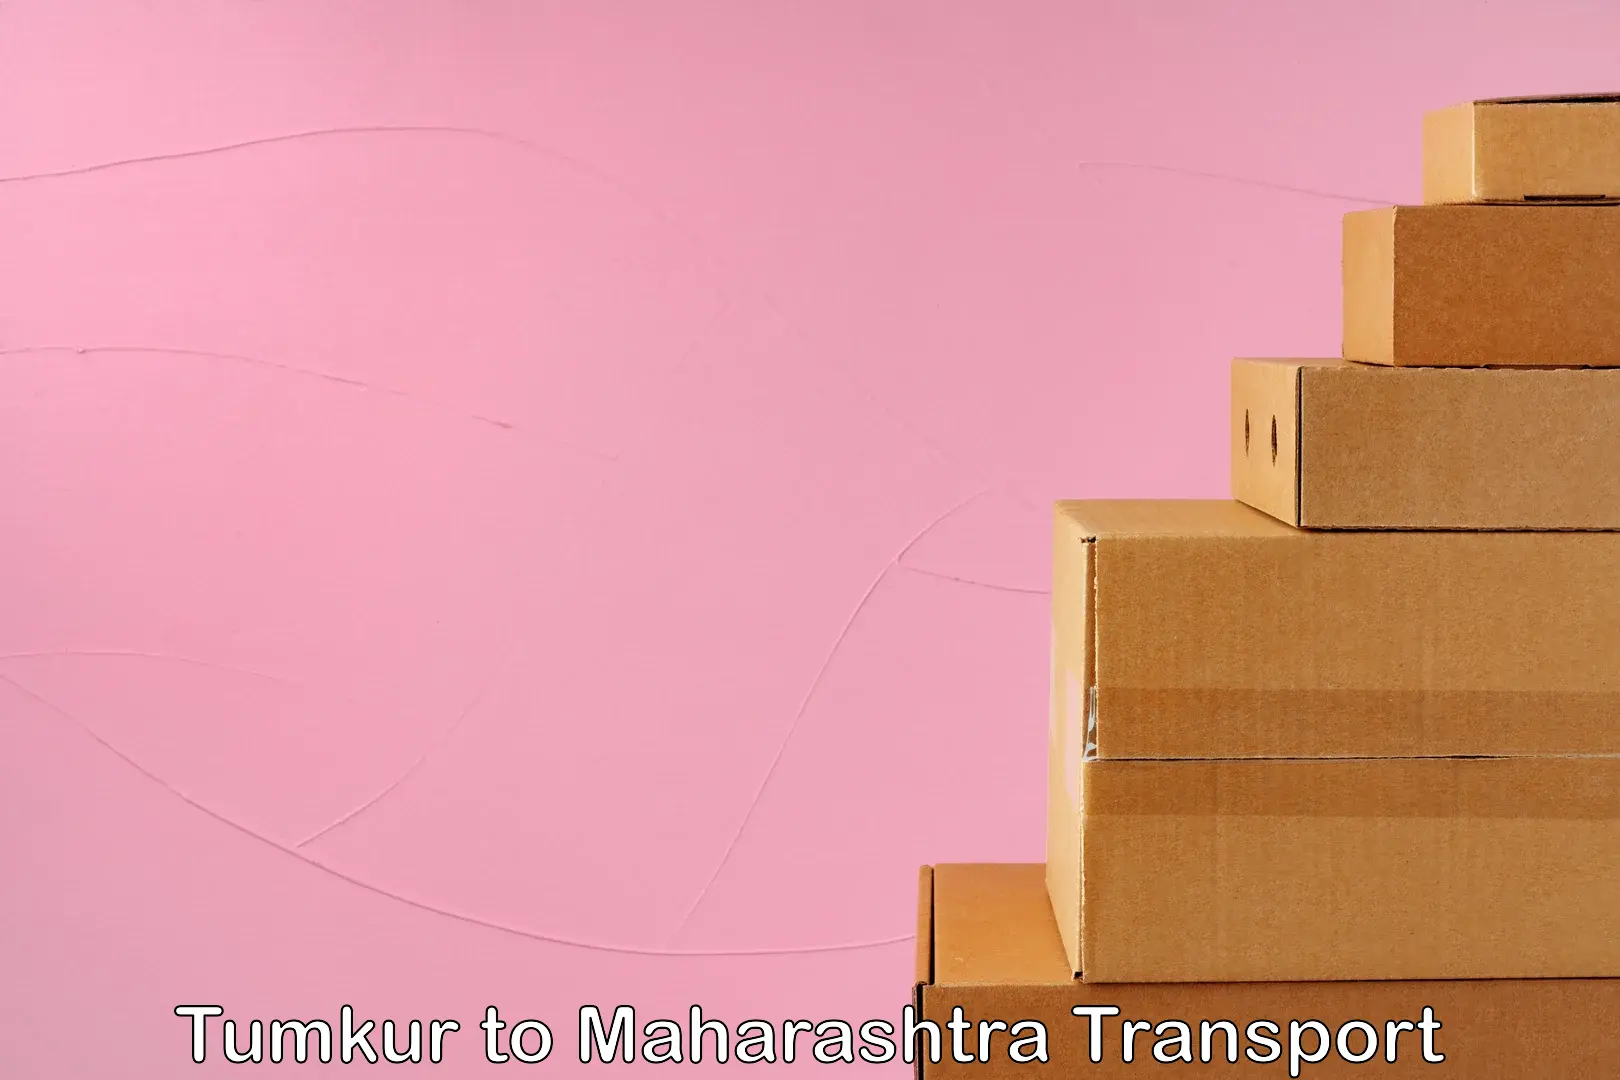 Online transport service Tumkur to Maharashtra